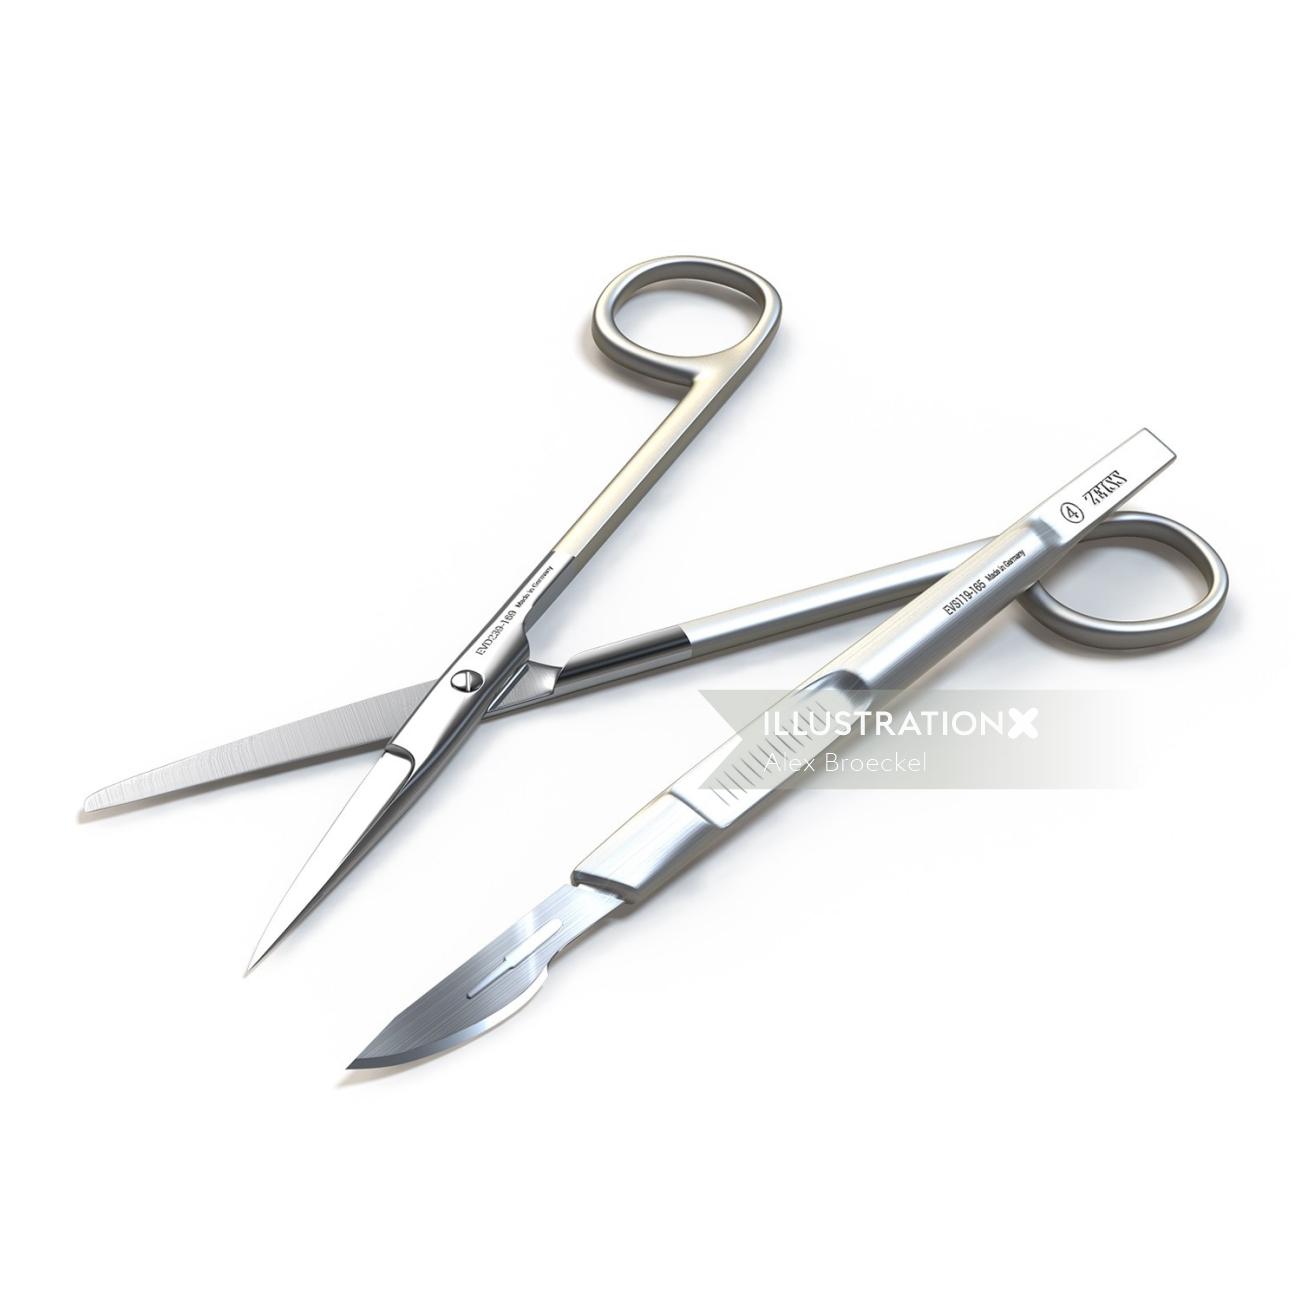 Una ilustración de tijeras médicas y cuchillo